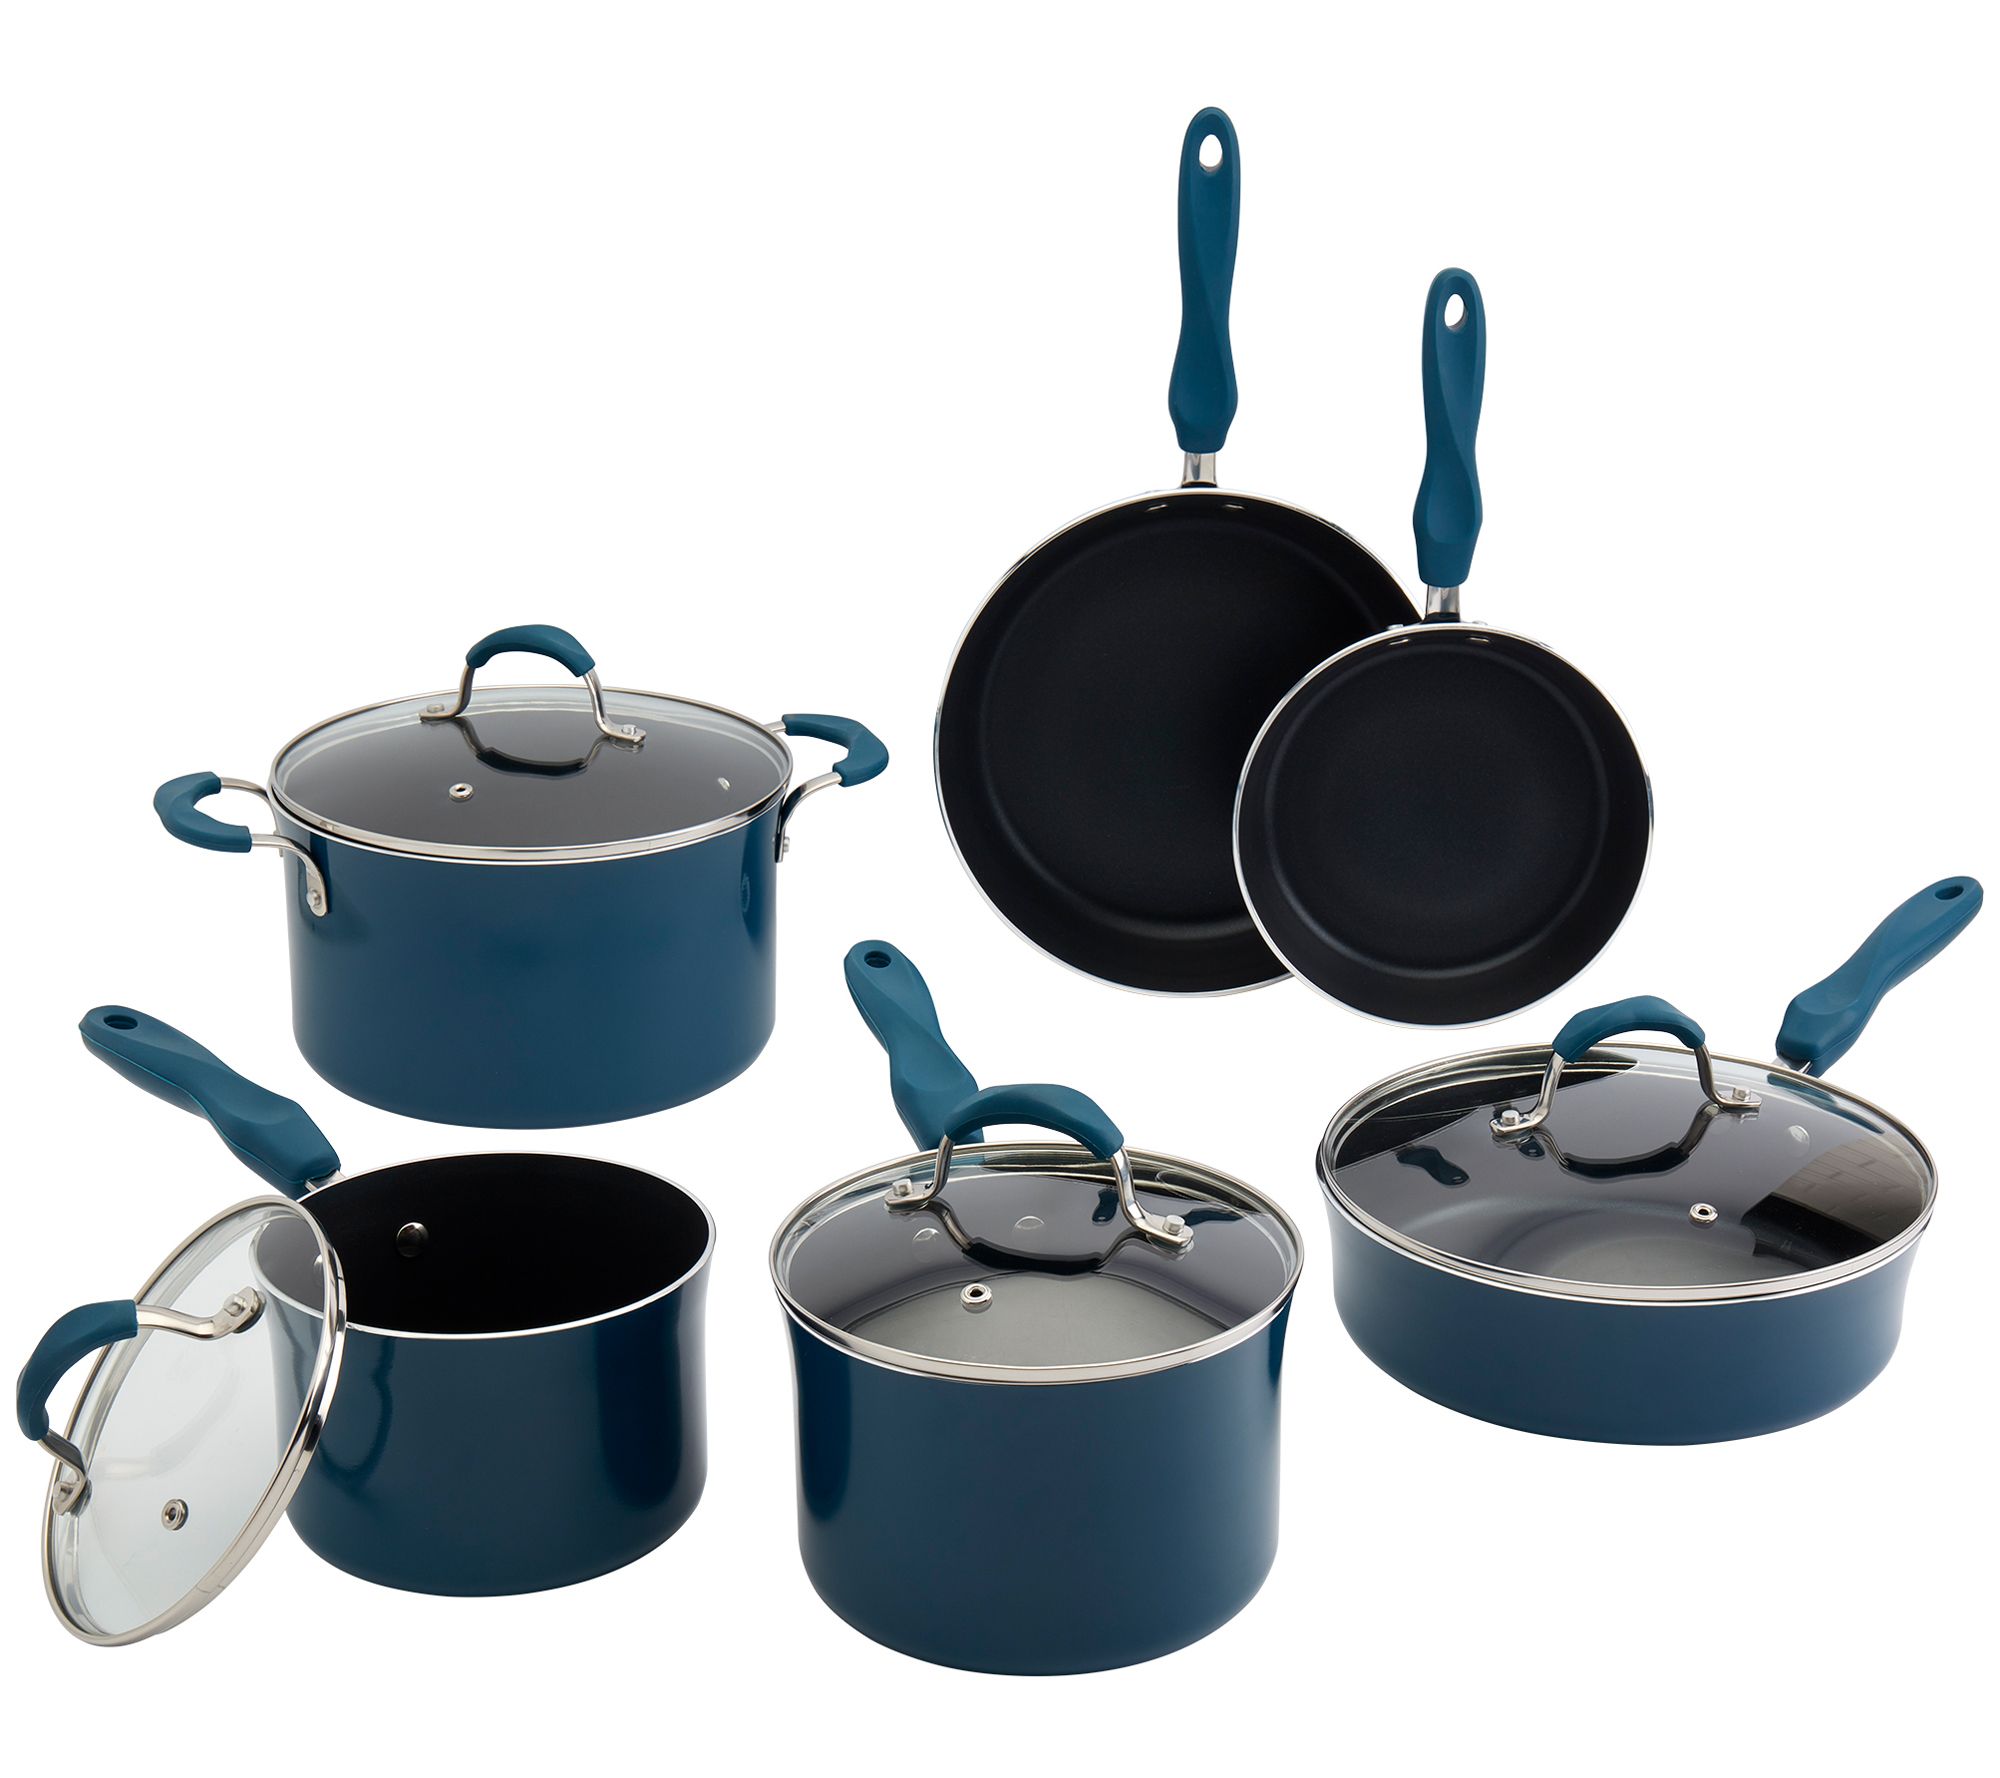 10-Pc. Non-Stick Aluminum Cookware Set, Blue